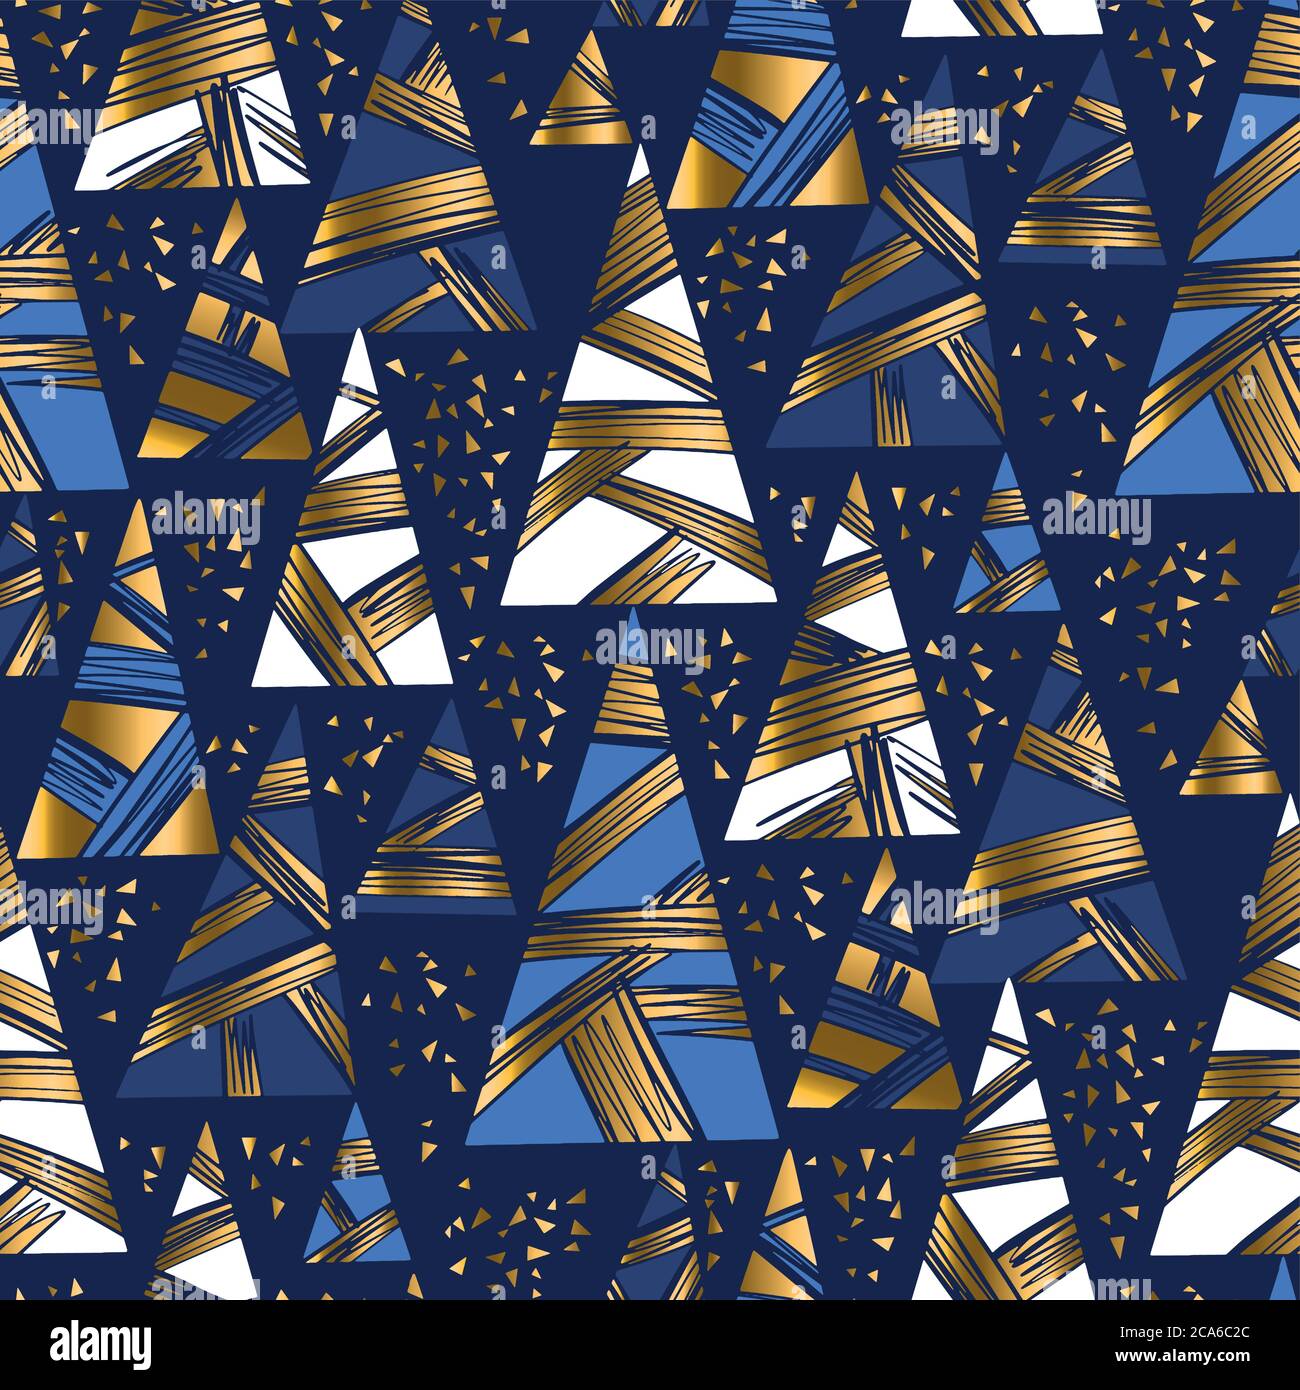 Luxus Weihnachtsbaum geometrische nahtlose Muster für Hintergrund, Stoff, Textil, Wrap, Oberfläche, Web und Print. Gold und blau Farben wiederholbar ra Stock Vektor